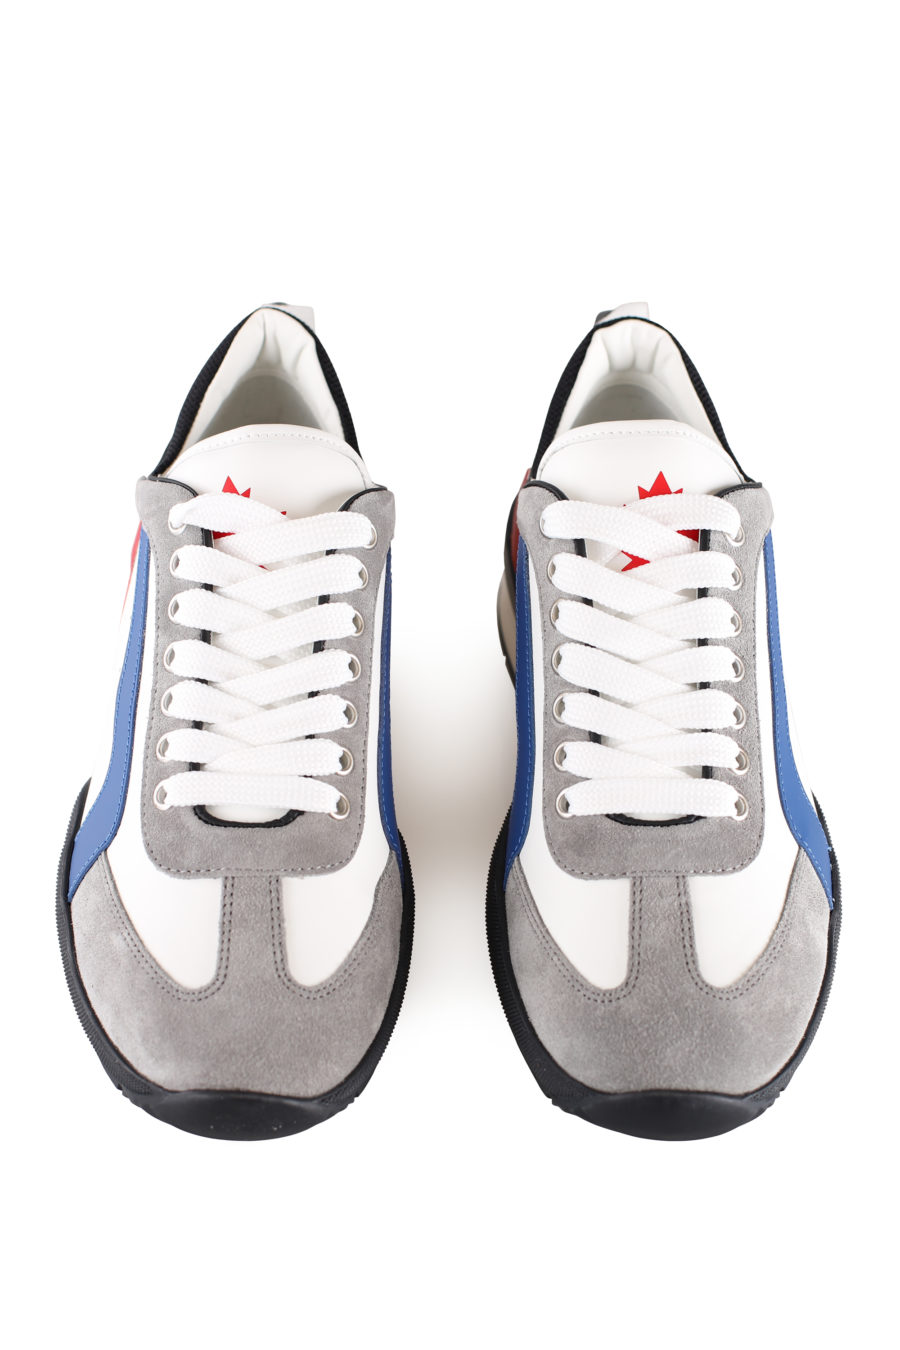 Zapatillas blancas multicolor y logo pequeño - IMG 0044